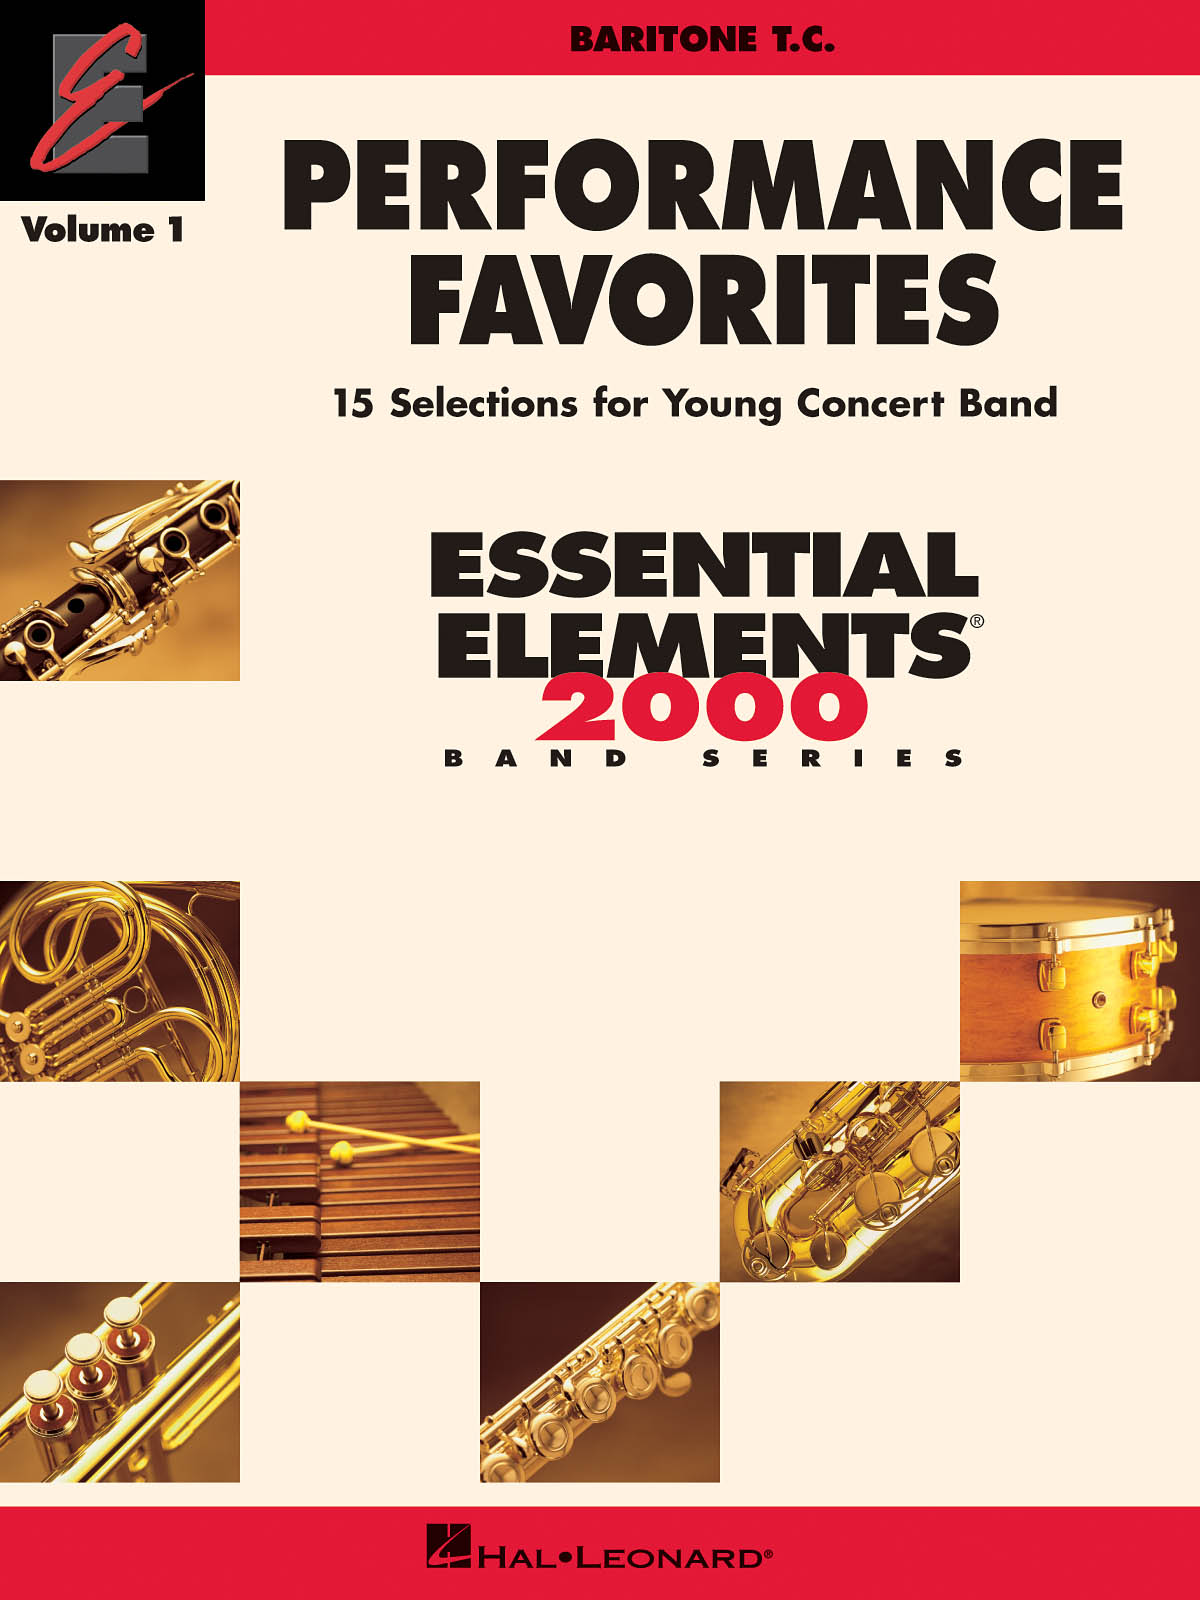 Performance Favorites Vol. 1 - Baritone T.C. - 15 Selections for Young Concert Band pro nástroje v různých laděních